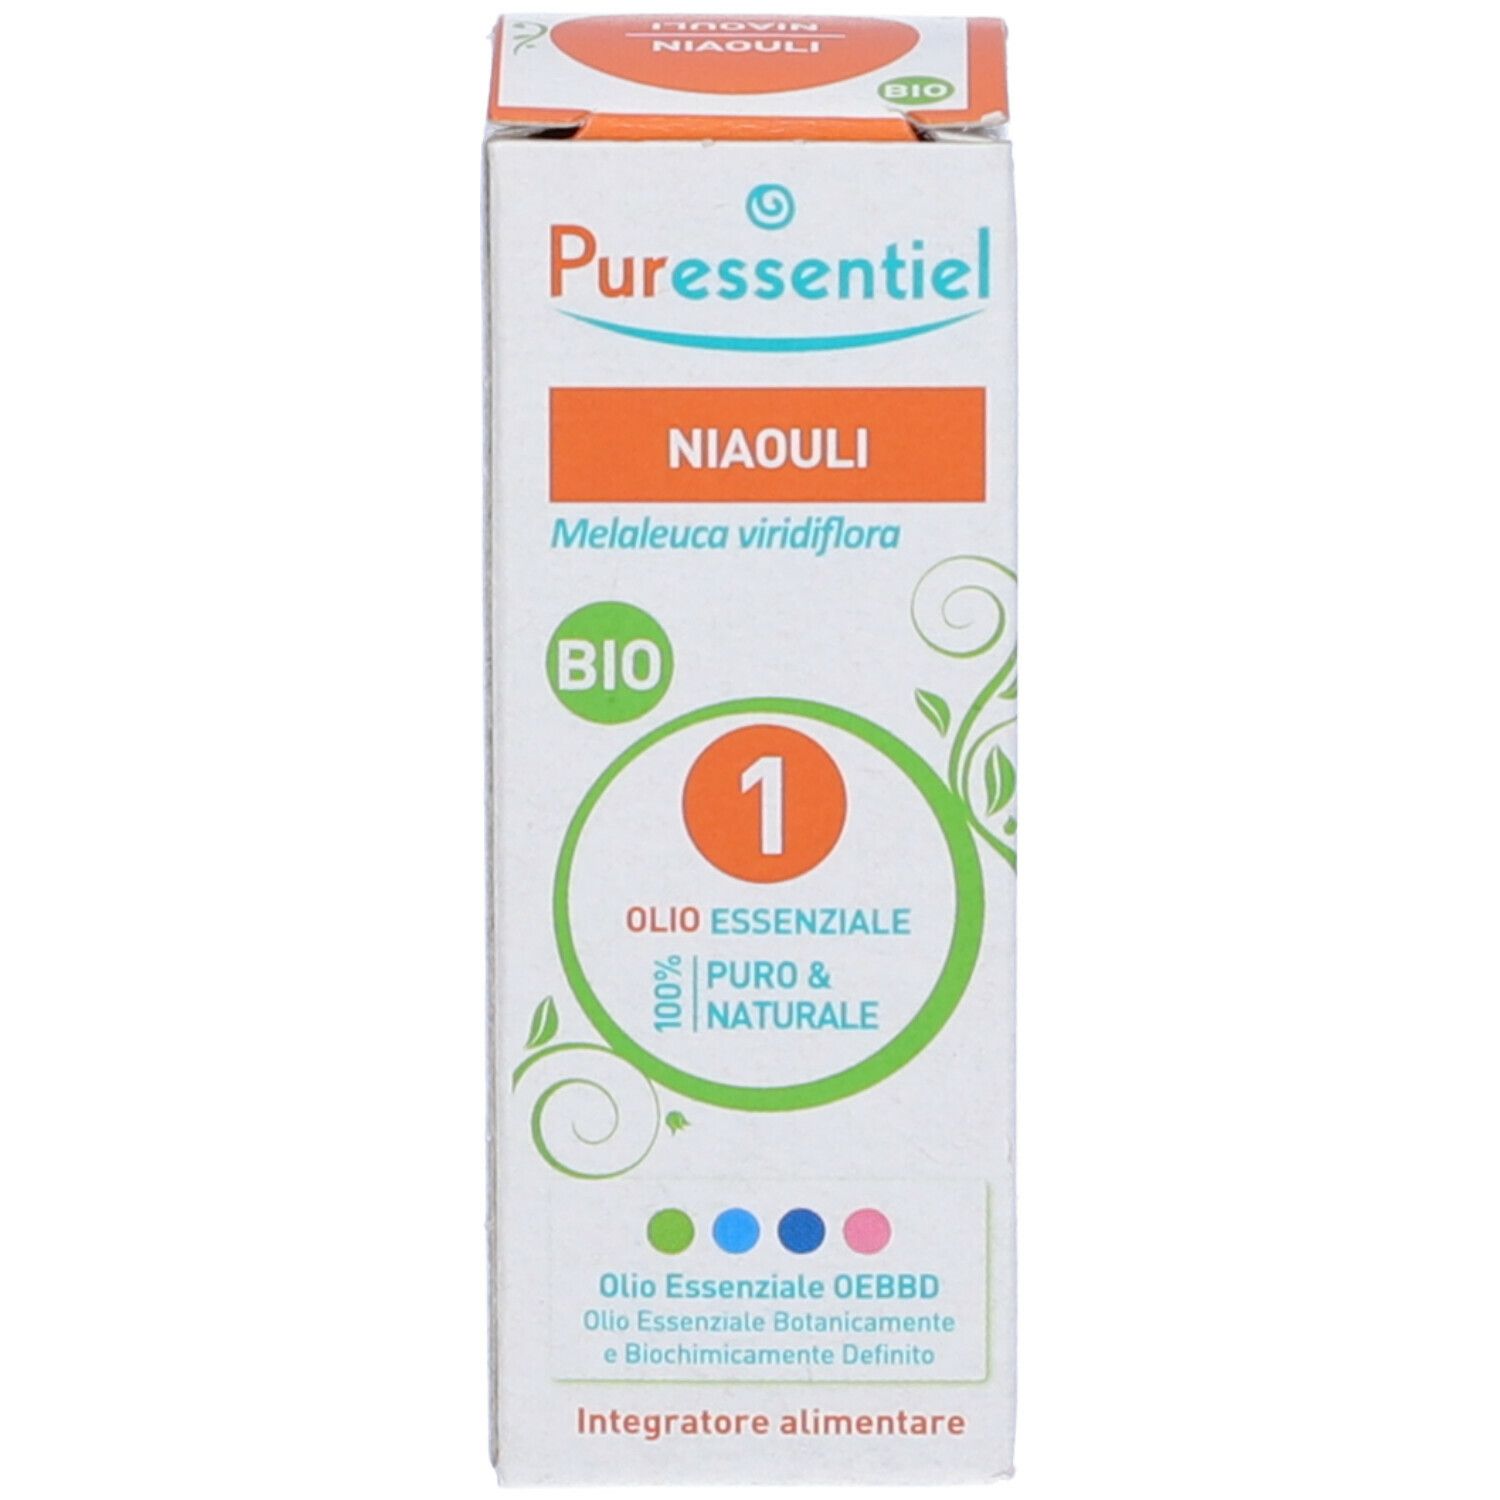 Puressentiel® Oli Essenziali Niaouli Bio